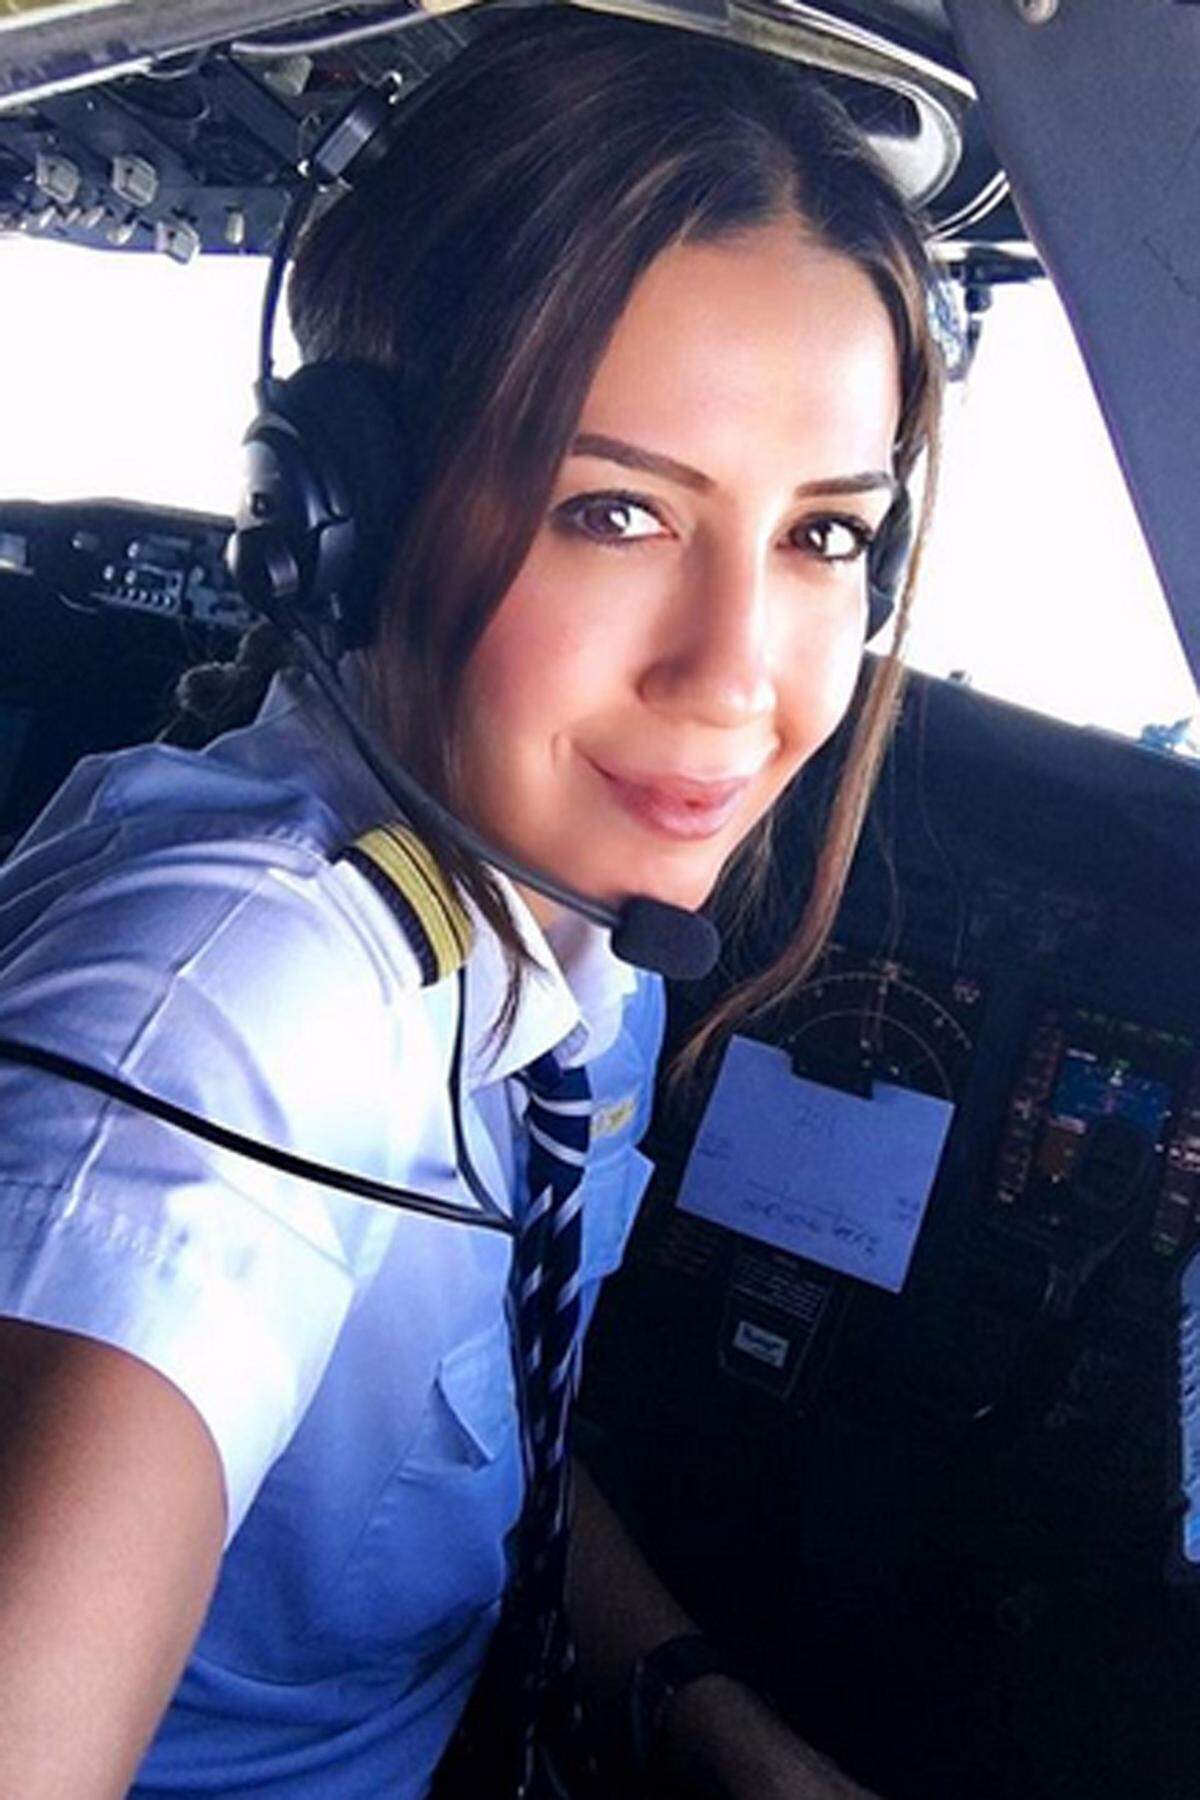 Auf knapp 94.000 Follower kommt die türkische Pilotin Eser Aksan Erdogan, die am Steuer einer Boeing 737 sitzt.